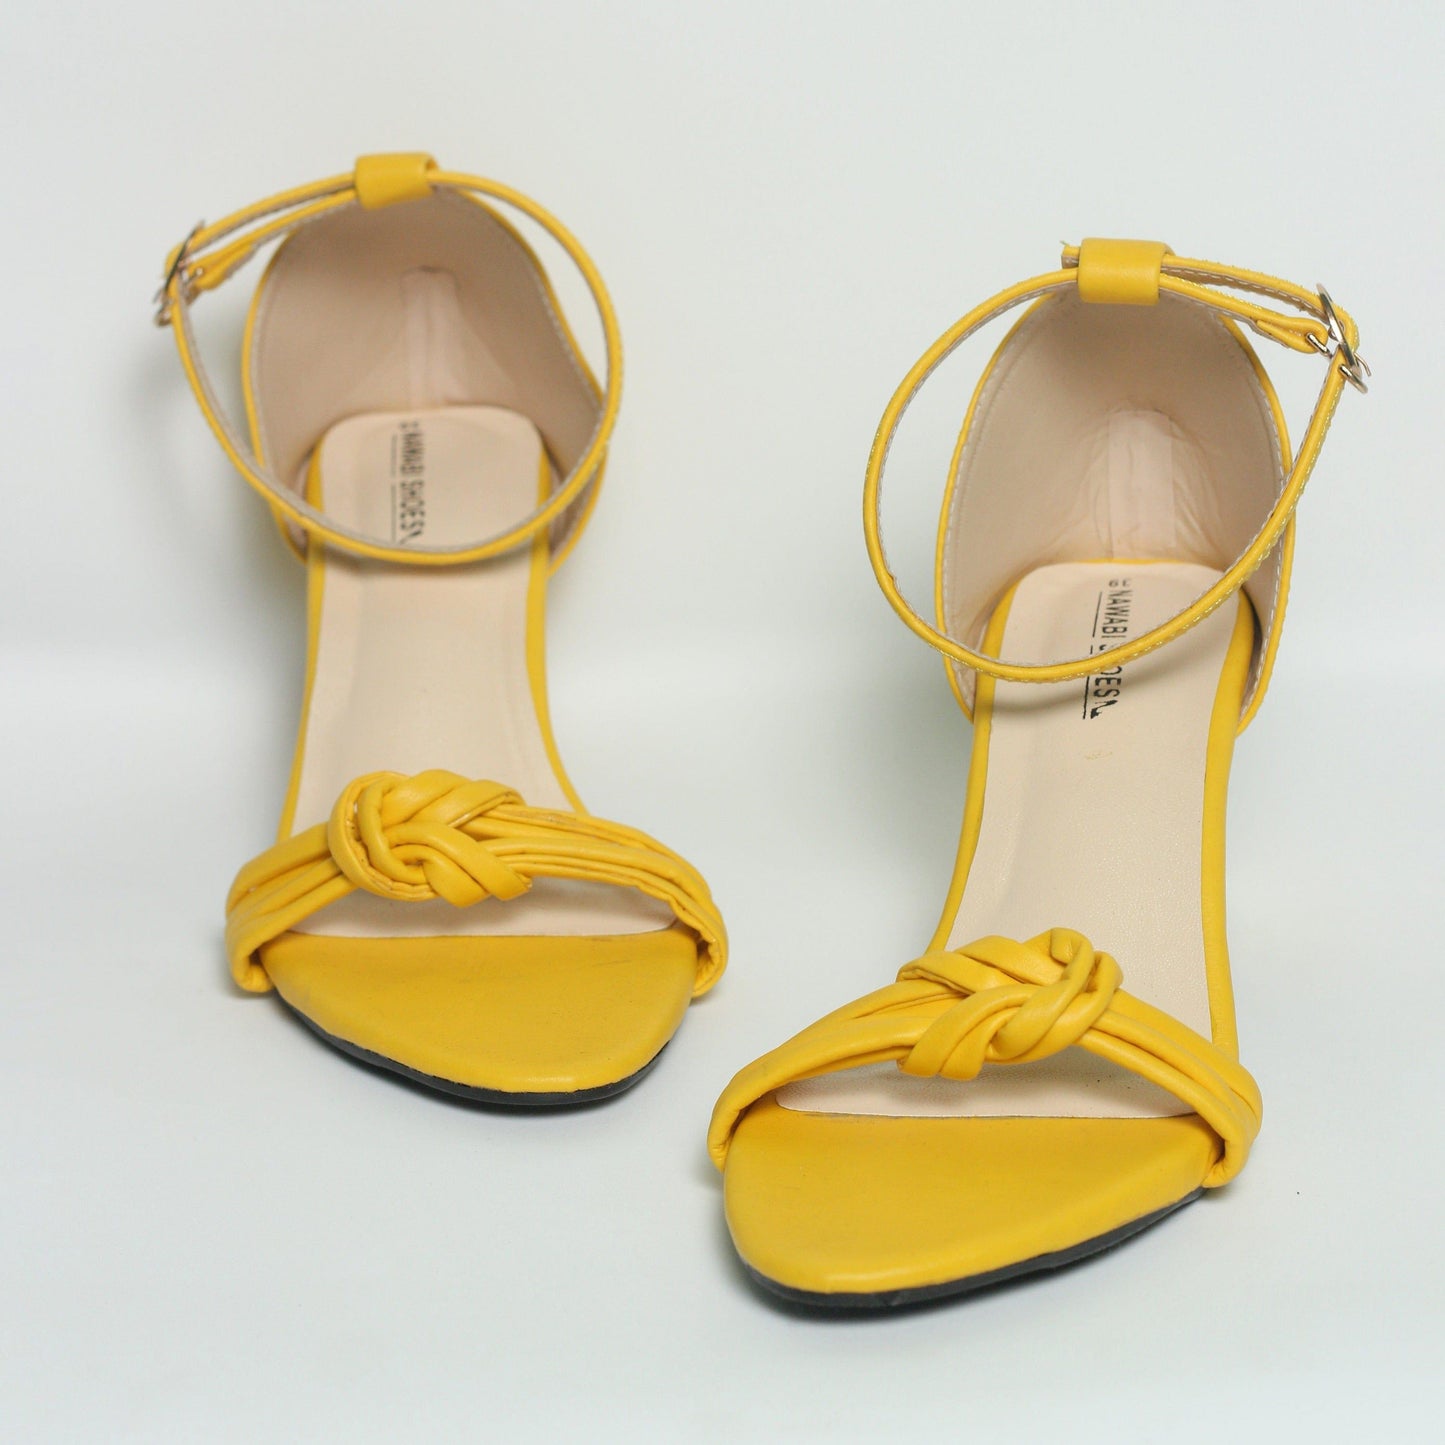 Nawabi Shoes BD Shoes 35 / yellow Block Heels Shoes For Women